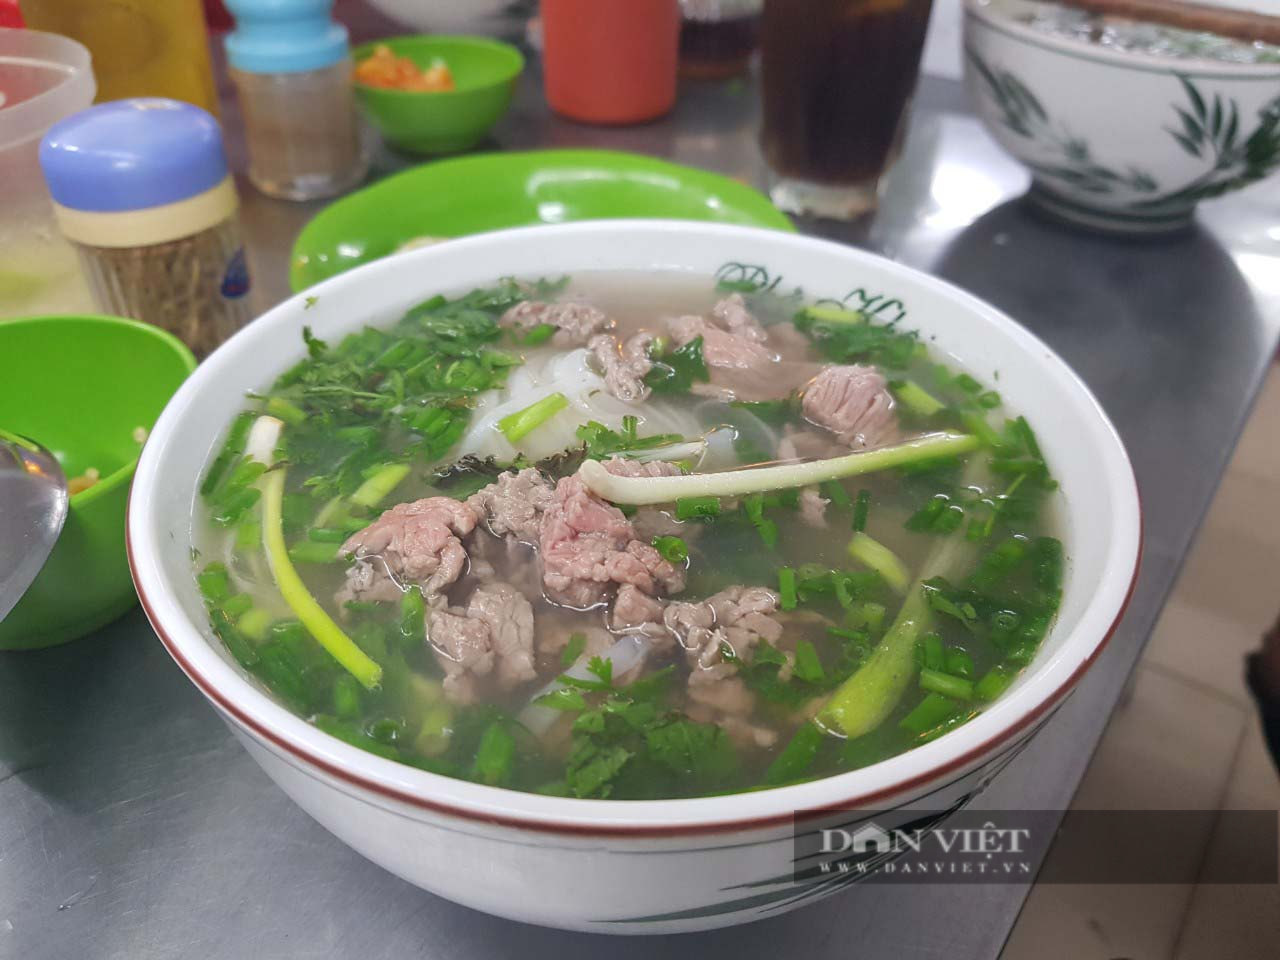 Mở cửa sau mùa dịch, quán phở “ruột” của ĐTQG Việt Nam hút khách sành ăn - 1